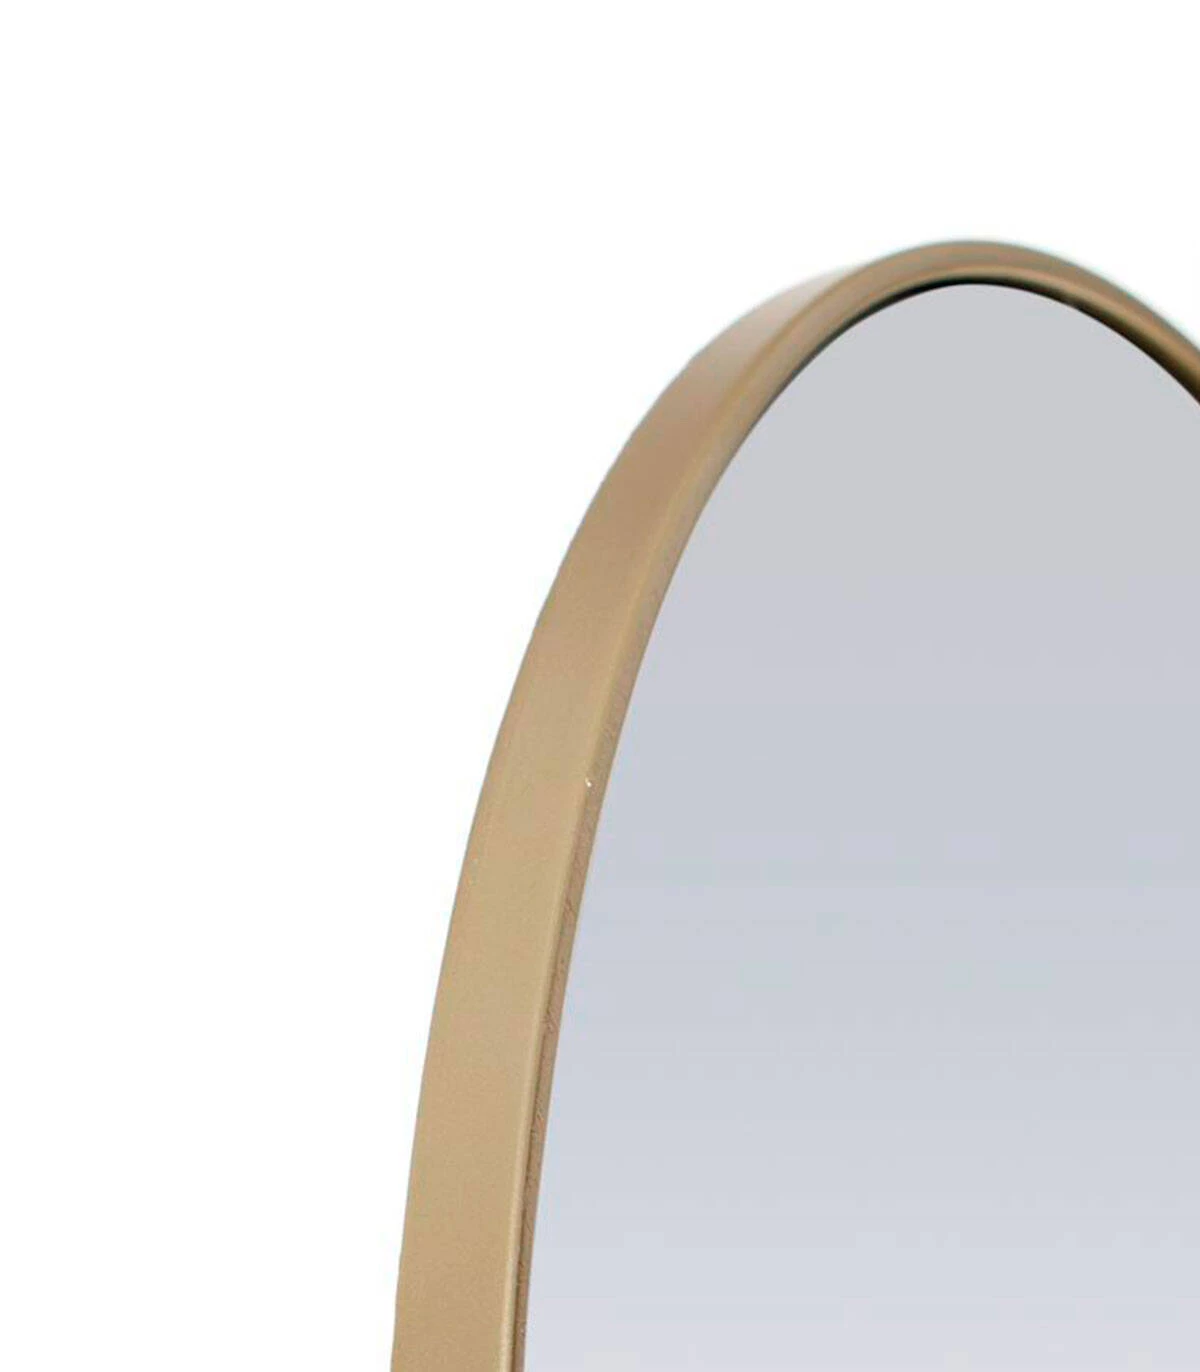 Espejo ovalado con borde metálico dorado Diana